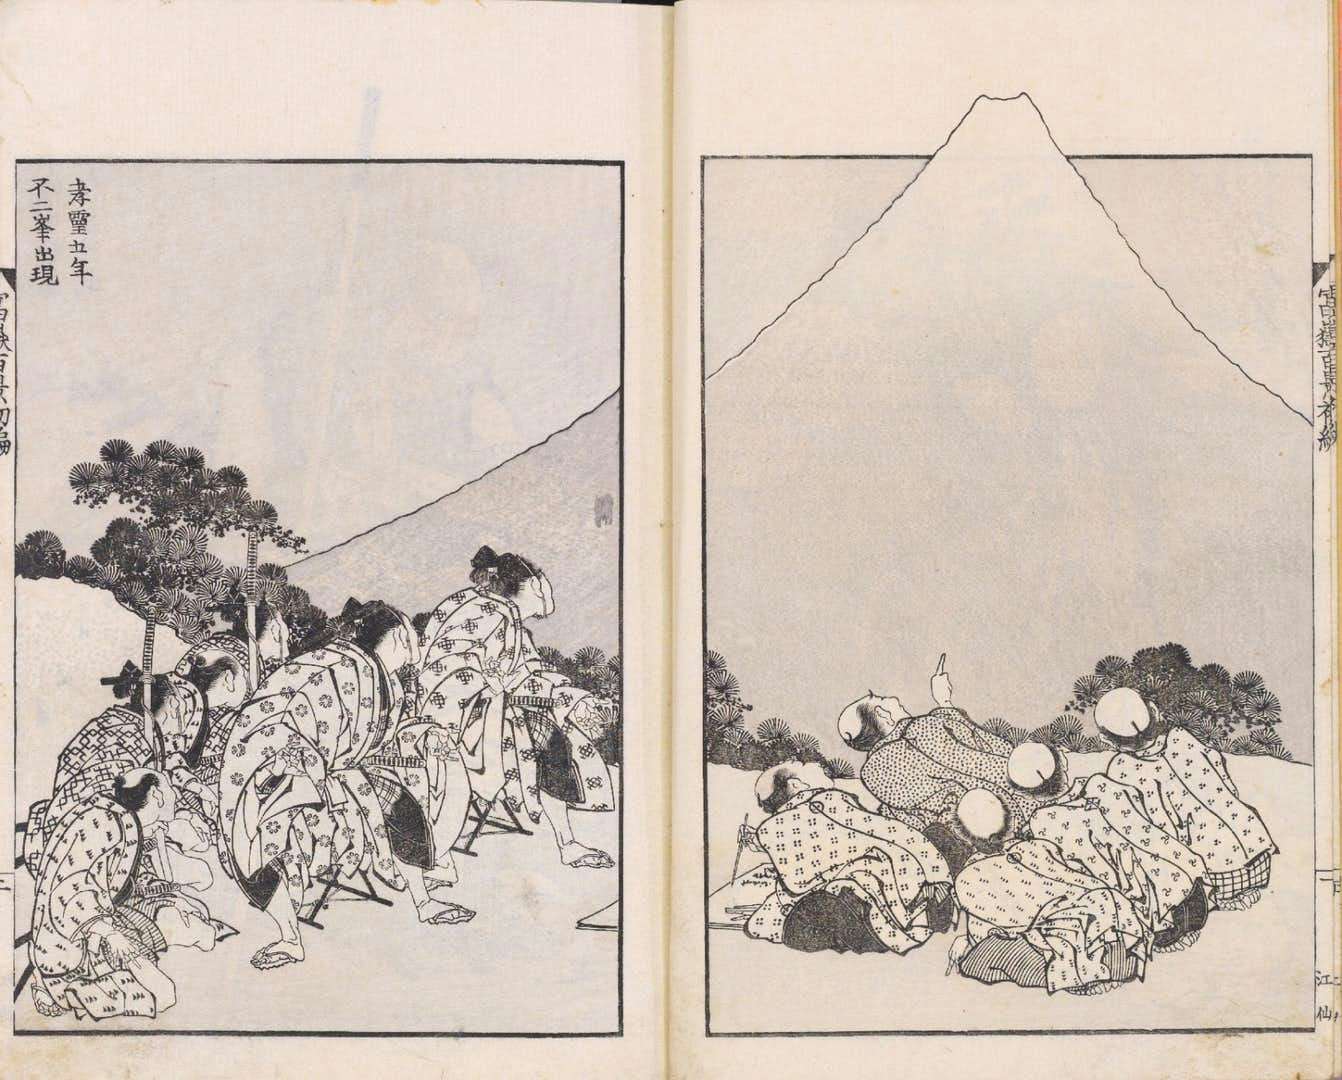 特別展 北斎 Hokusai の開幕が延期に 会期は21年を予定 美術手帖